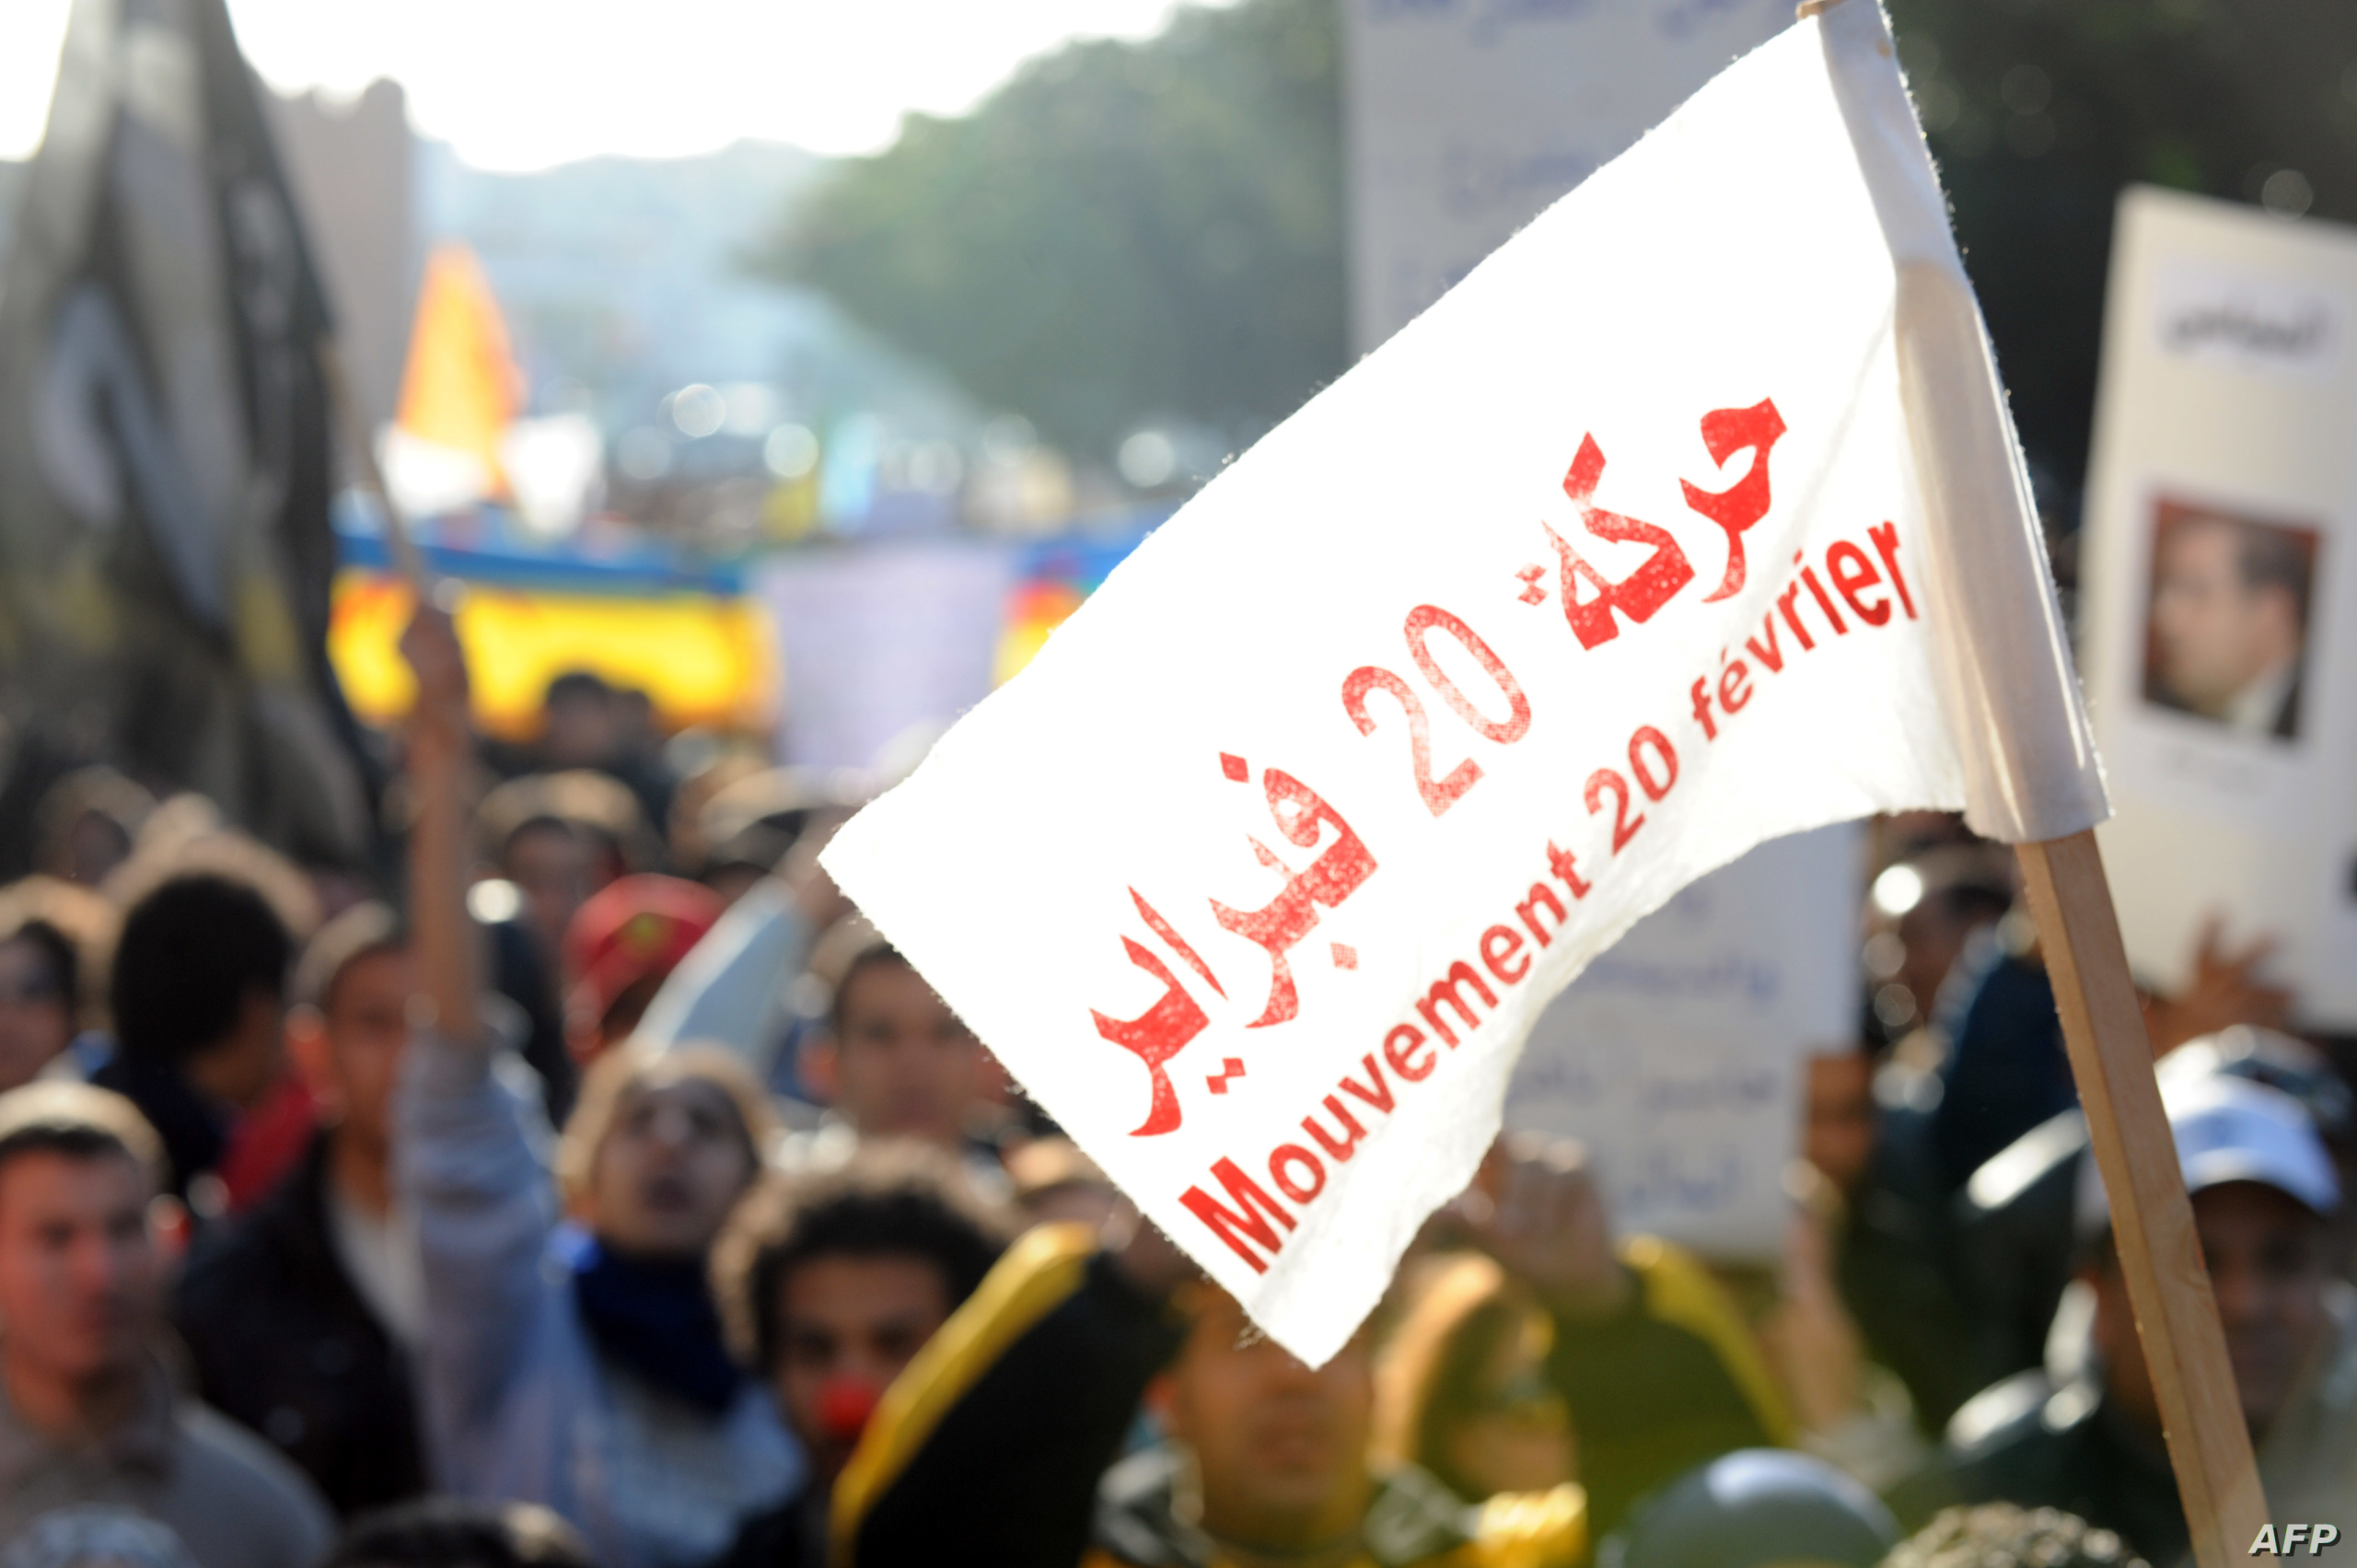 الجبهة الاجتماعية تخلد ذكرى “حركة 20 فبراير” بوقفات ومسيرات وطنية احتجاجا على الغلاء